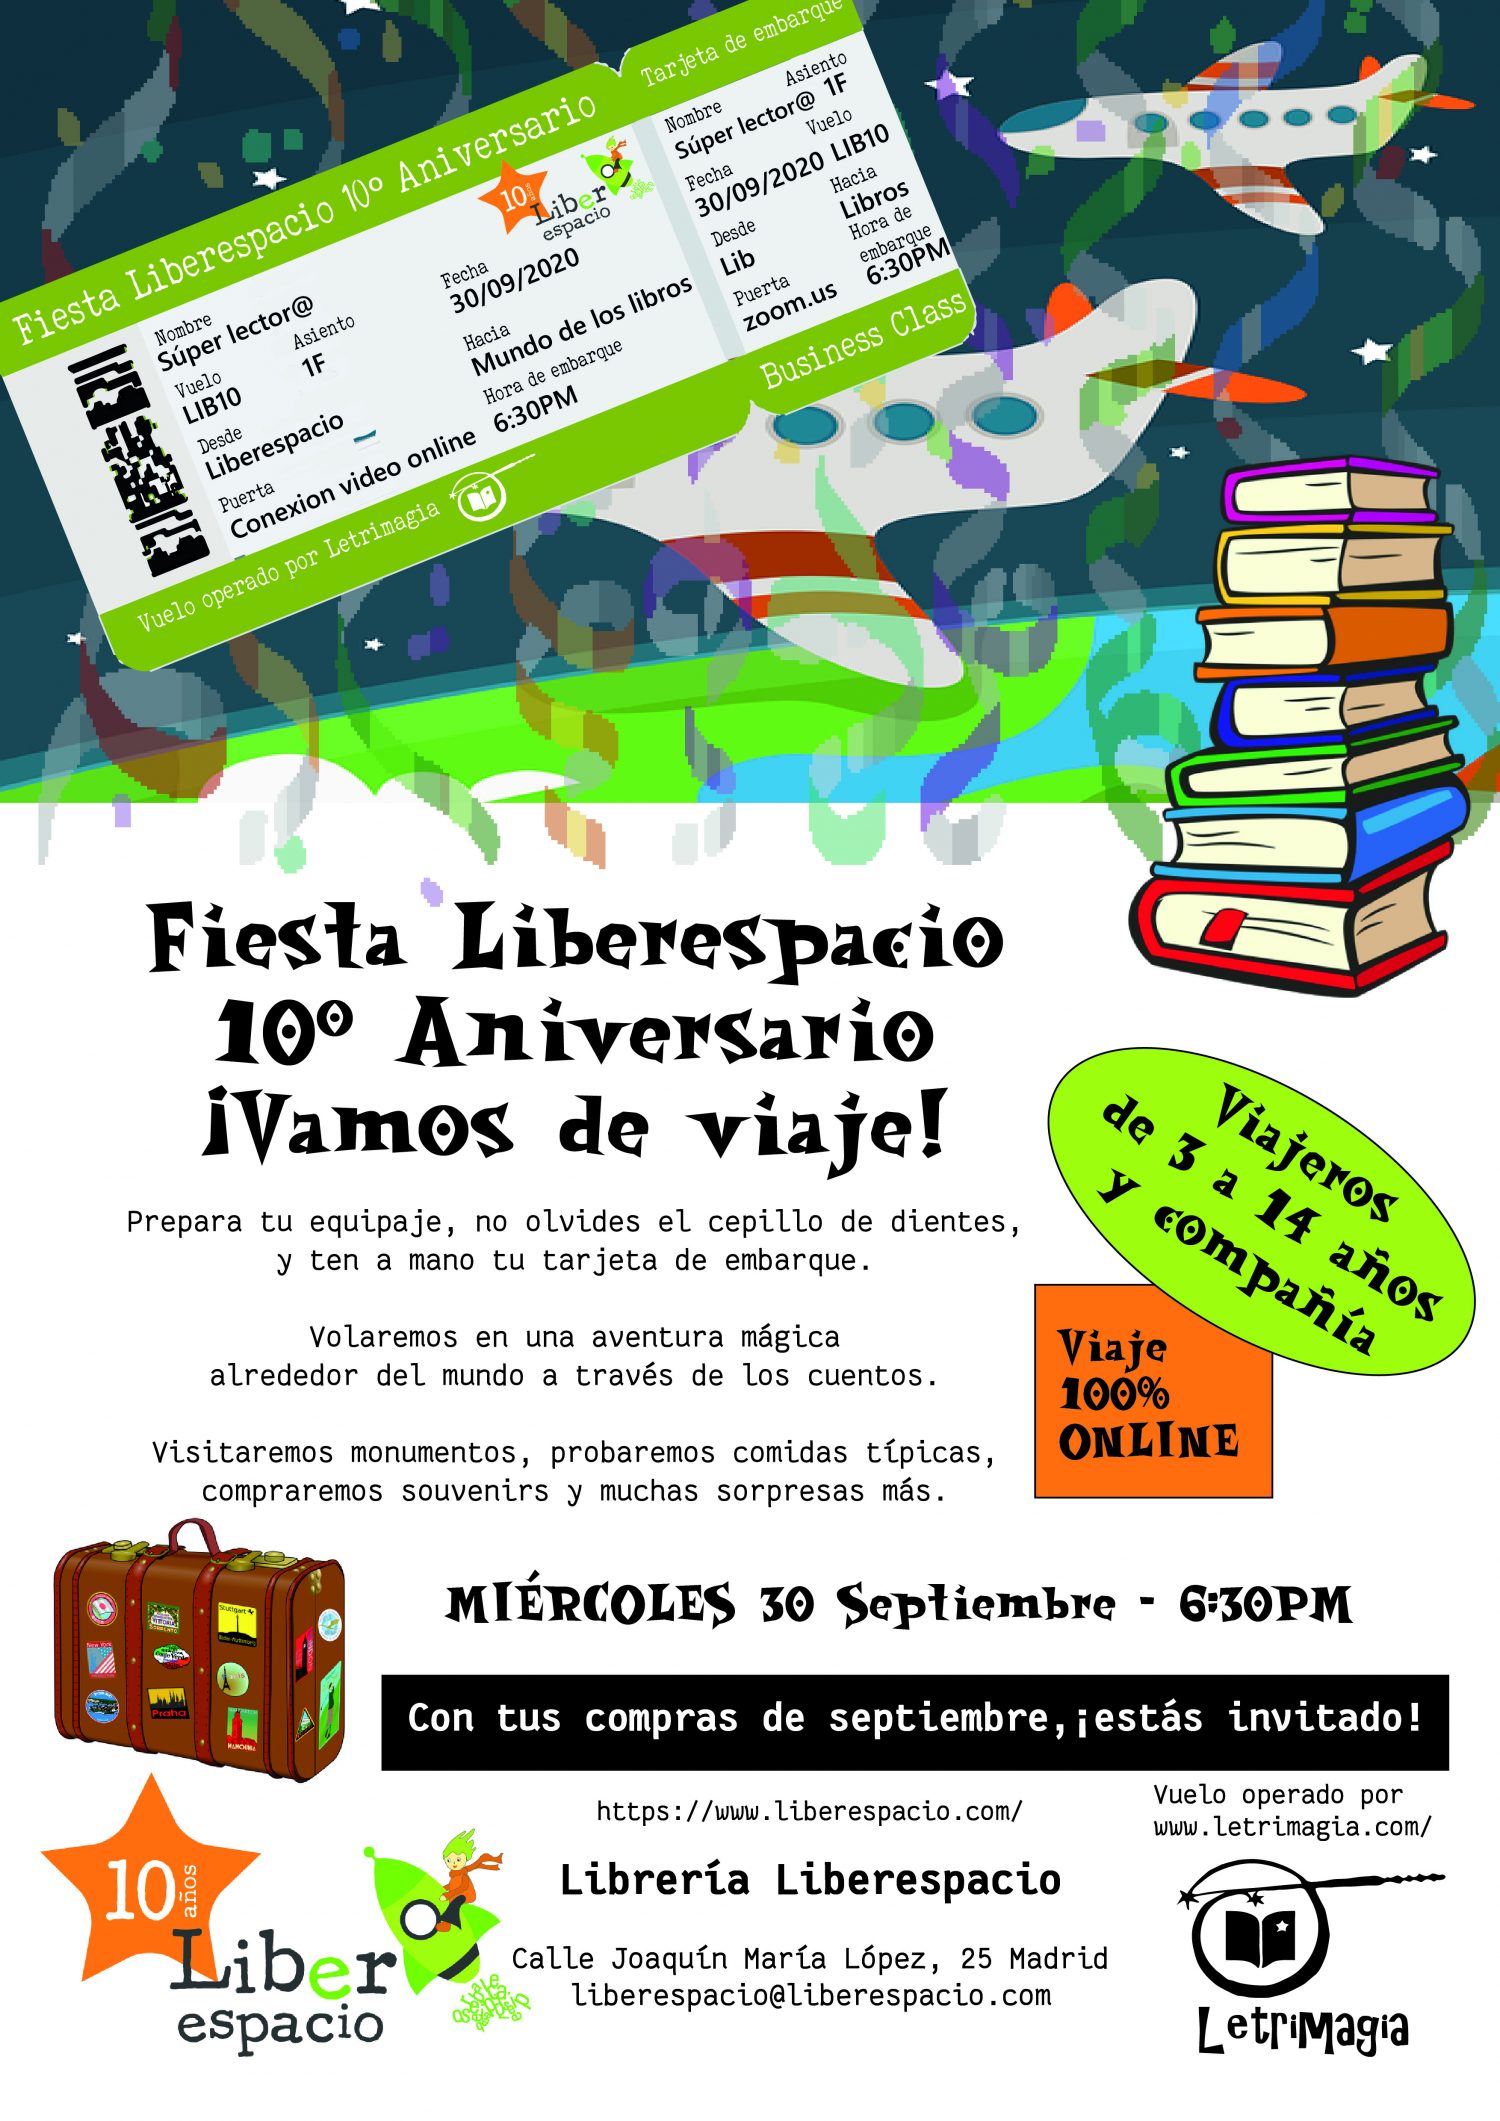 Fiesta Liberespacio 10 aniversario 2020 V1.1S